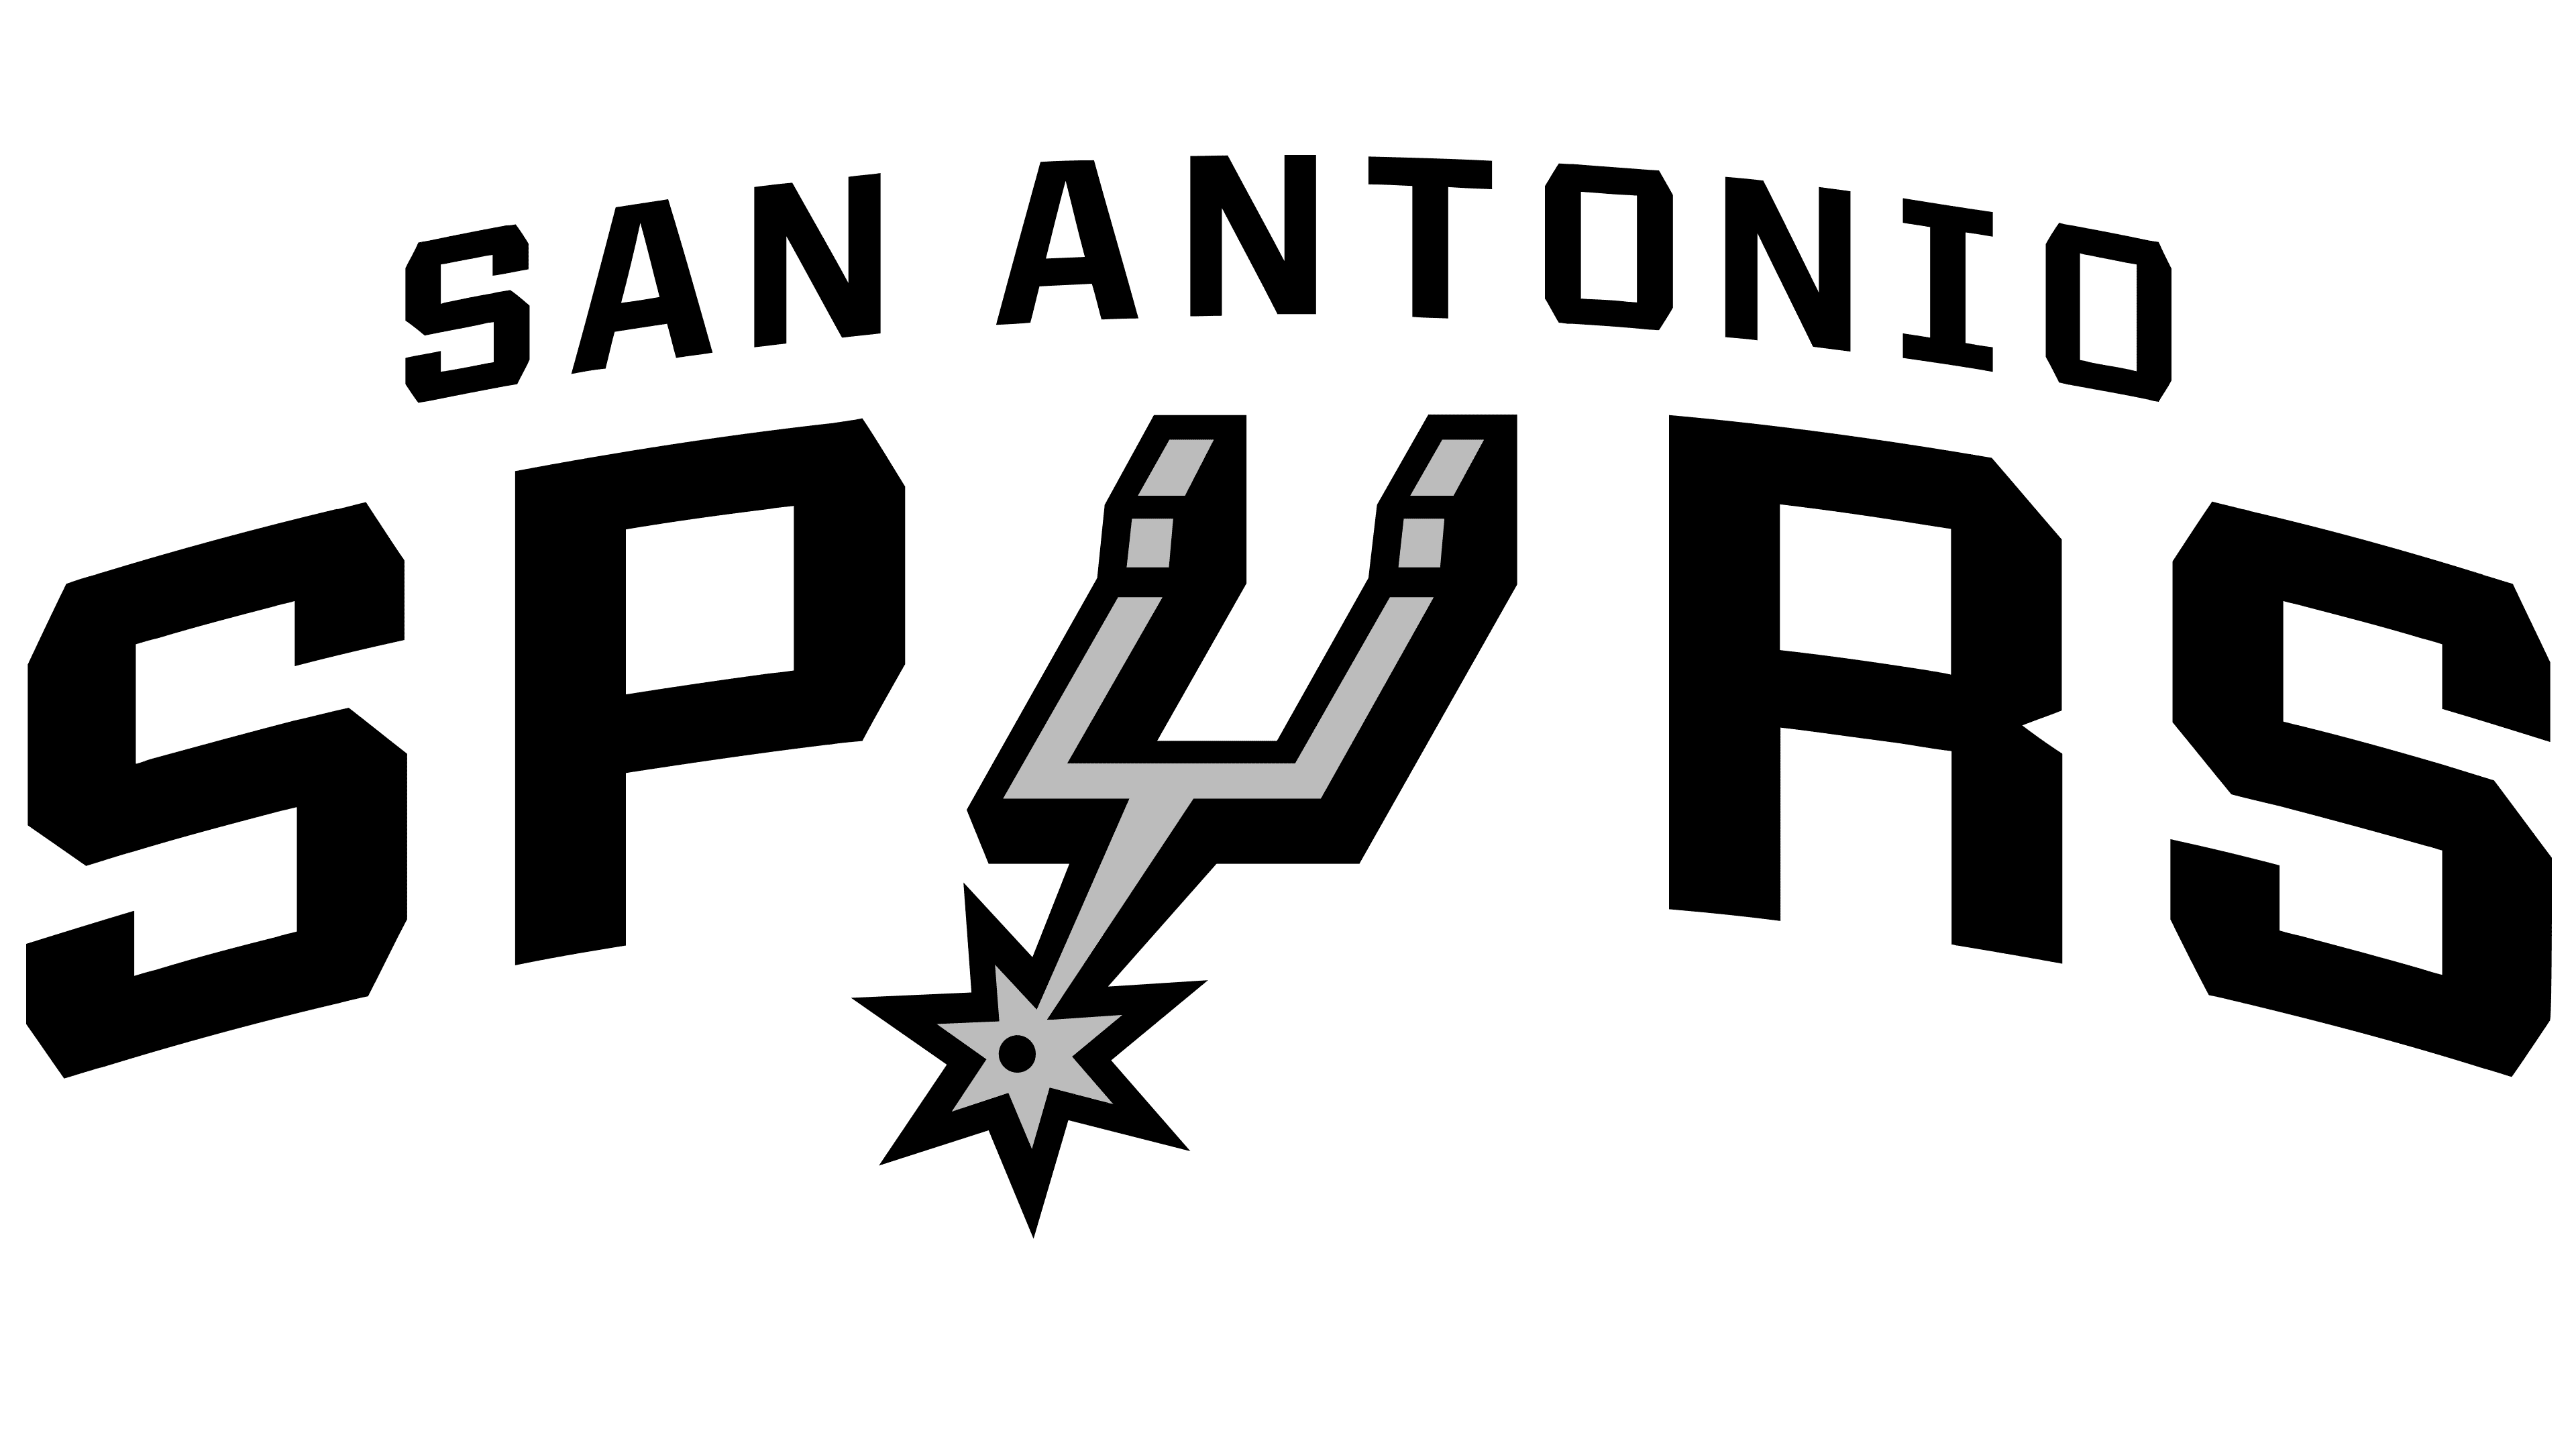 El logo de los Spurs combina detalles de su primera etapa con otros aspectos más comunes a la contemporaneidad (FOTOGRAFÍA gentileza 1000marcas).